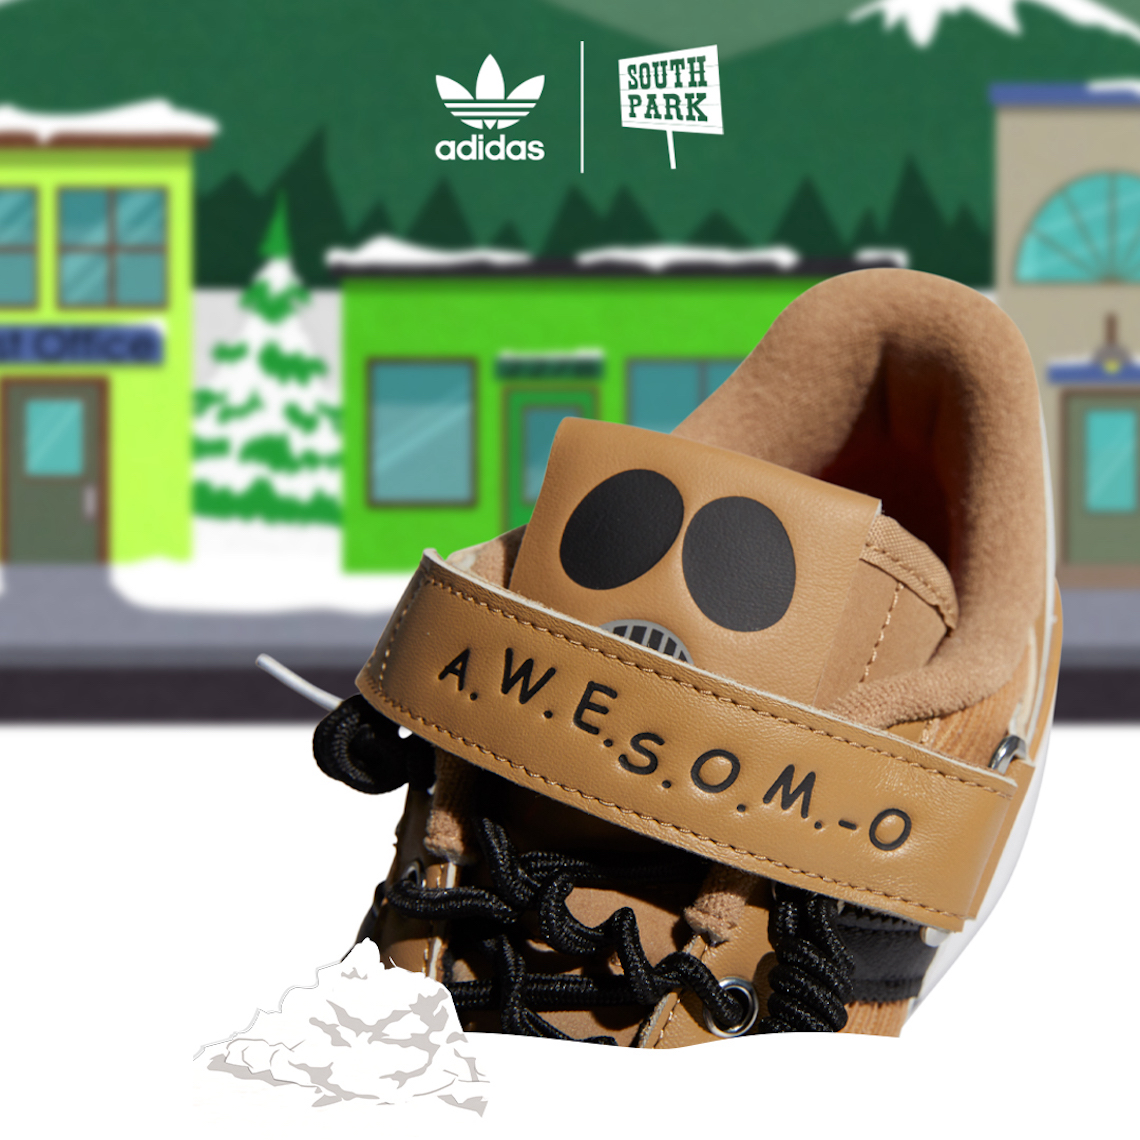 presumir Fanático músculo South Park x adidas Release Date | SneakerNews.com